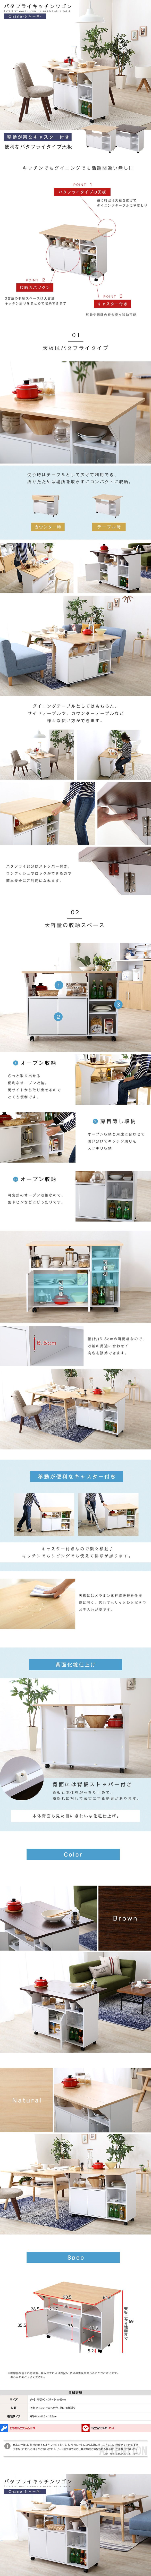 キッチンワゴン☆バタフライカウンターワゴン サイドテーブルやカウンターテーブルに 幅90cm キッチン収納 白 天板 収納、キッチン雑貨 